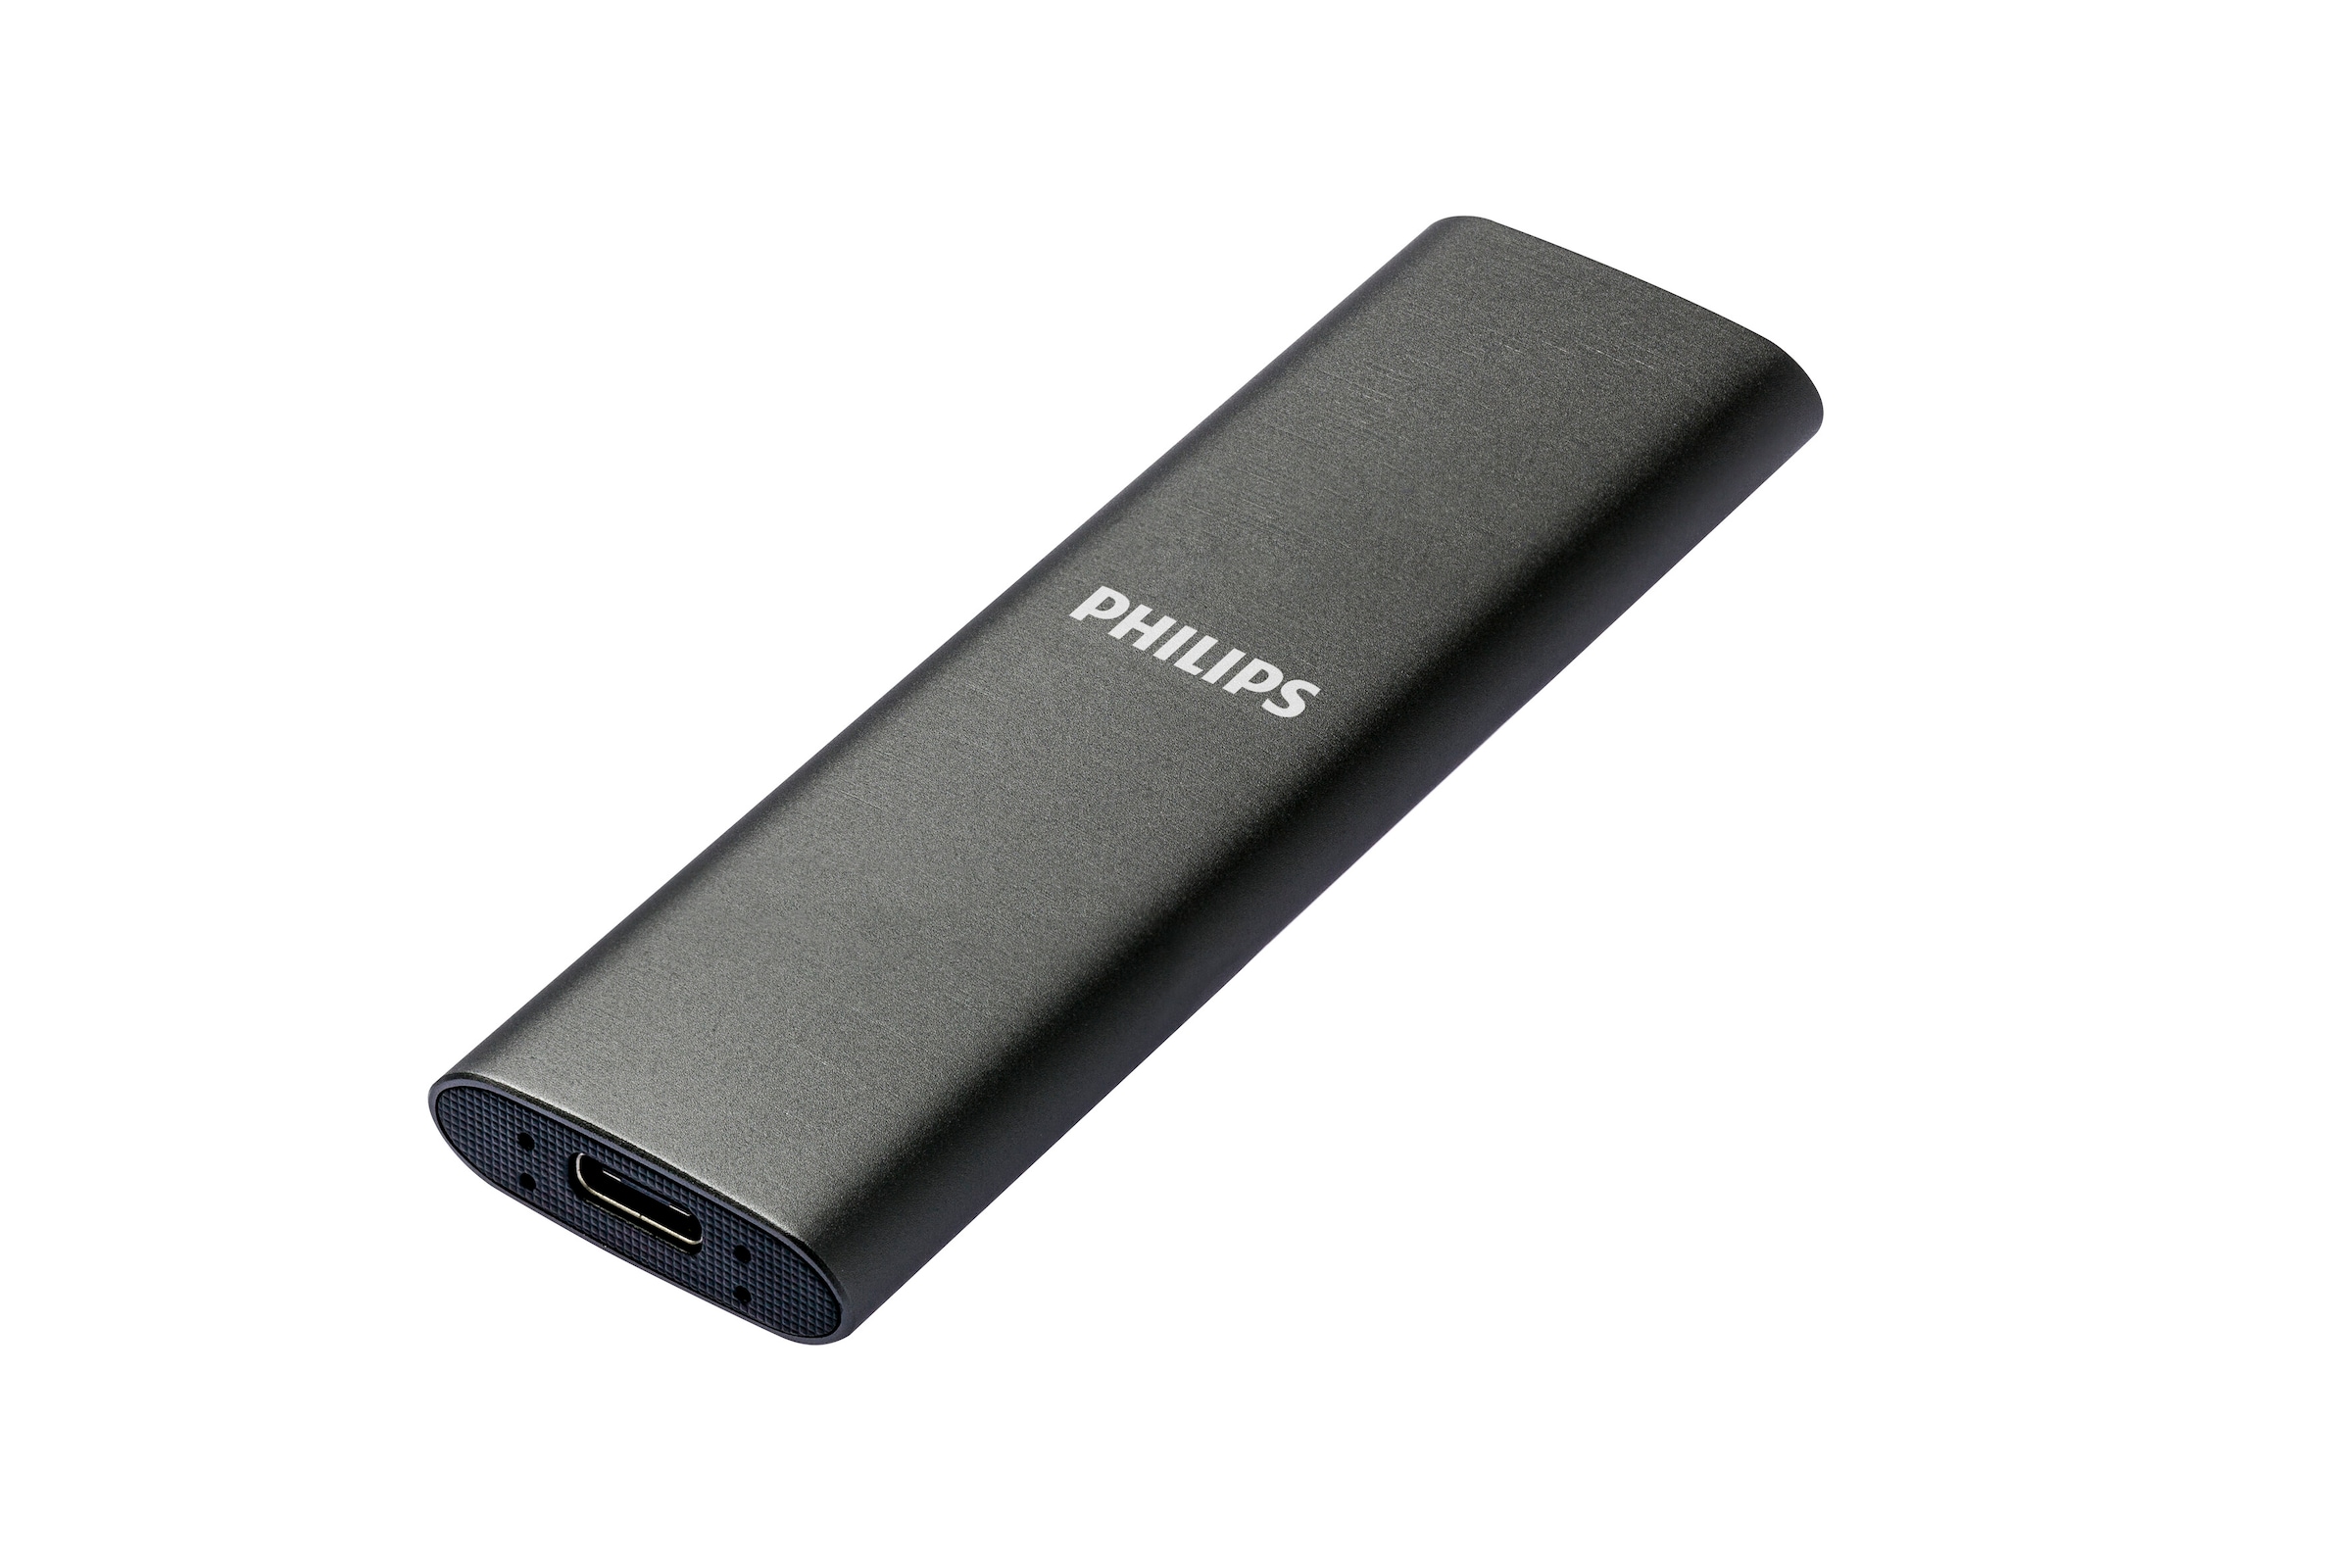 Philips externe SSD »External SSD 2TB«, Anschluss USB-C, Ultra Speed